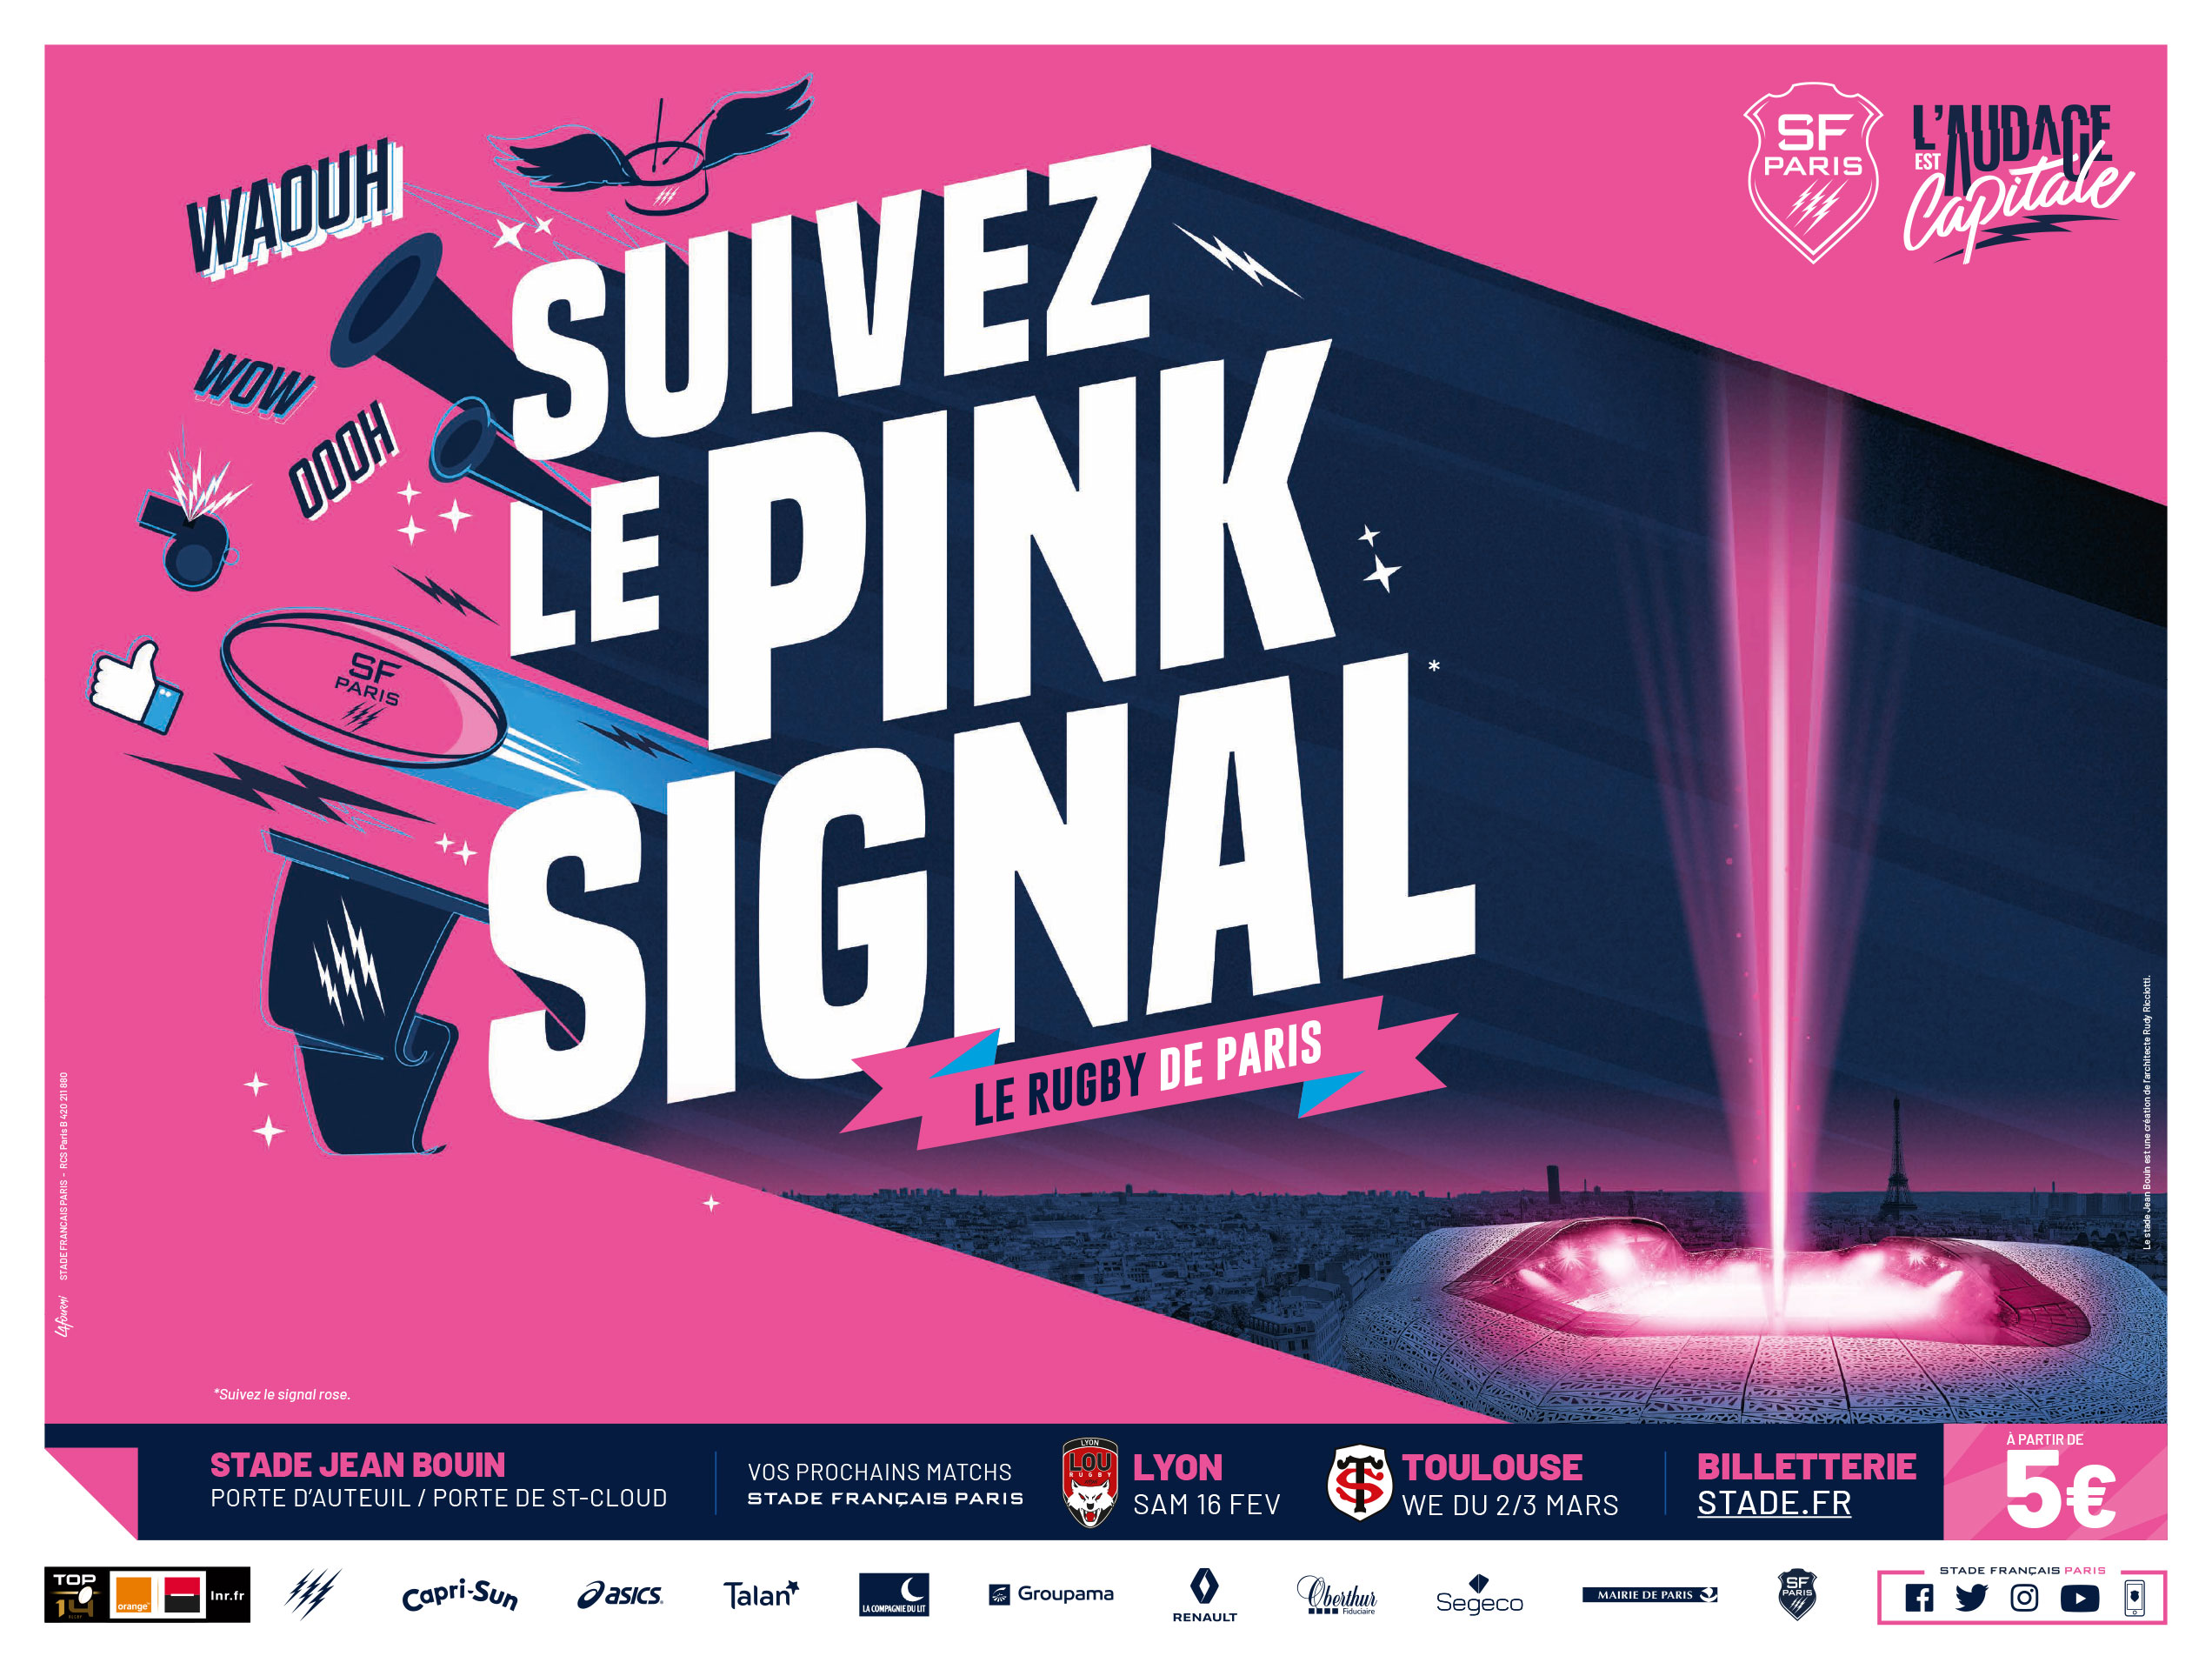 Projet_stade_francais_paris_l_audace_est_capitale_suivez_le_pink_signal_follow